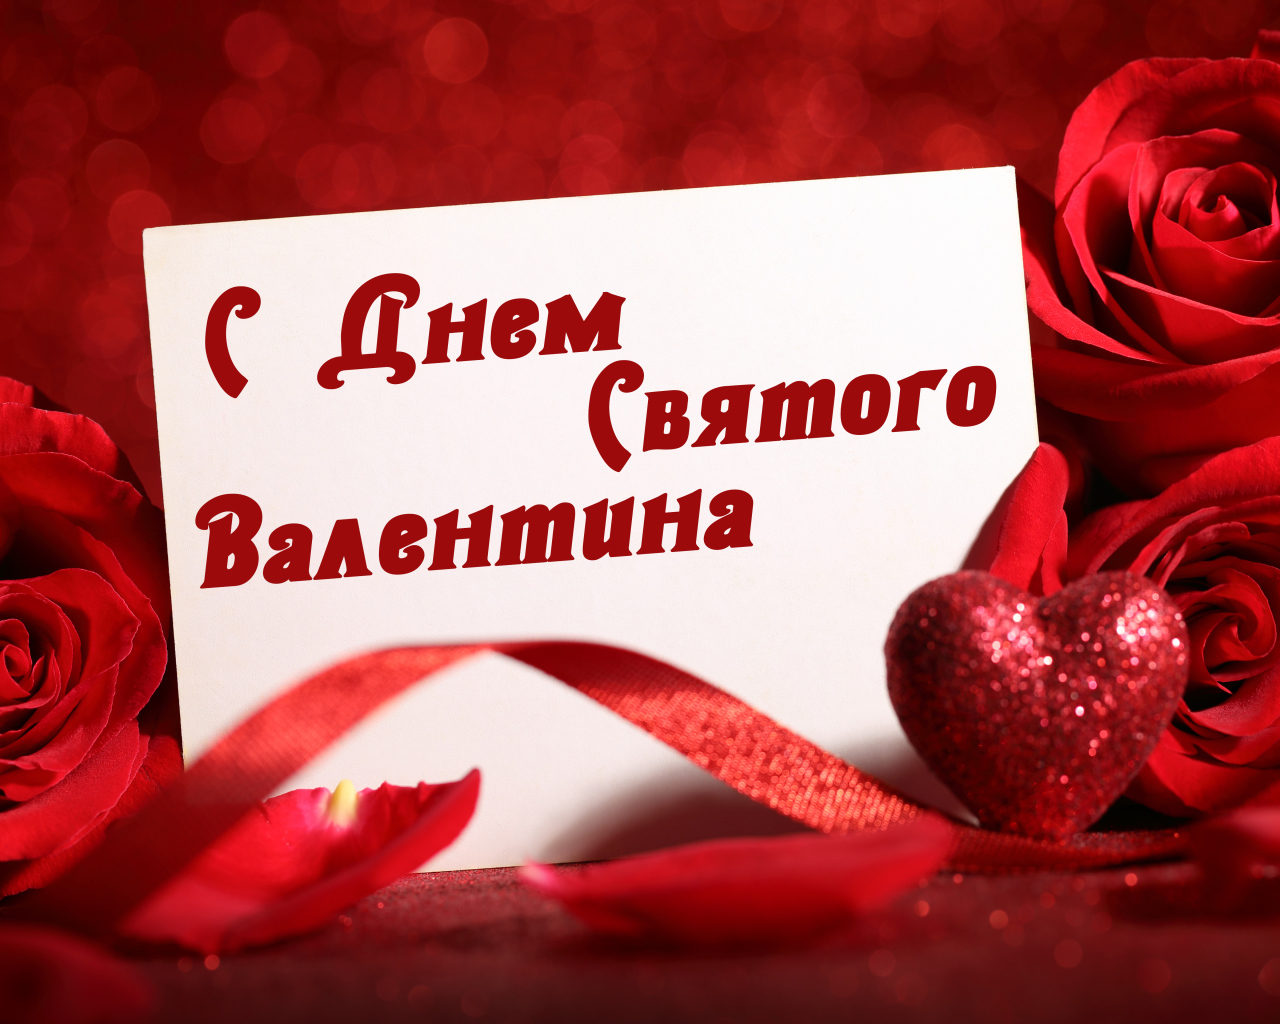 Красивая открытка с розами и красным сердцем на День Святого Валентина